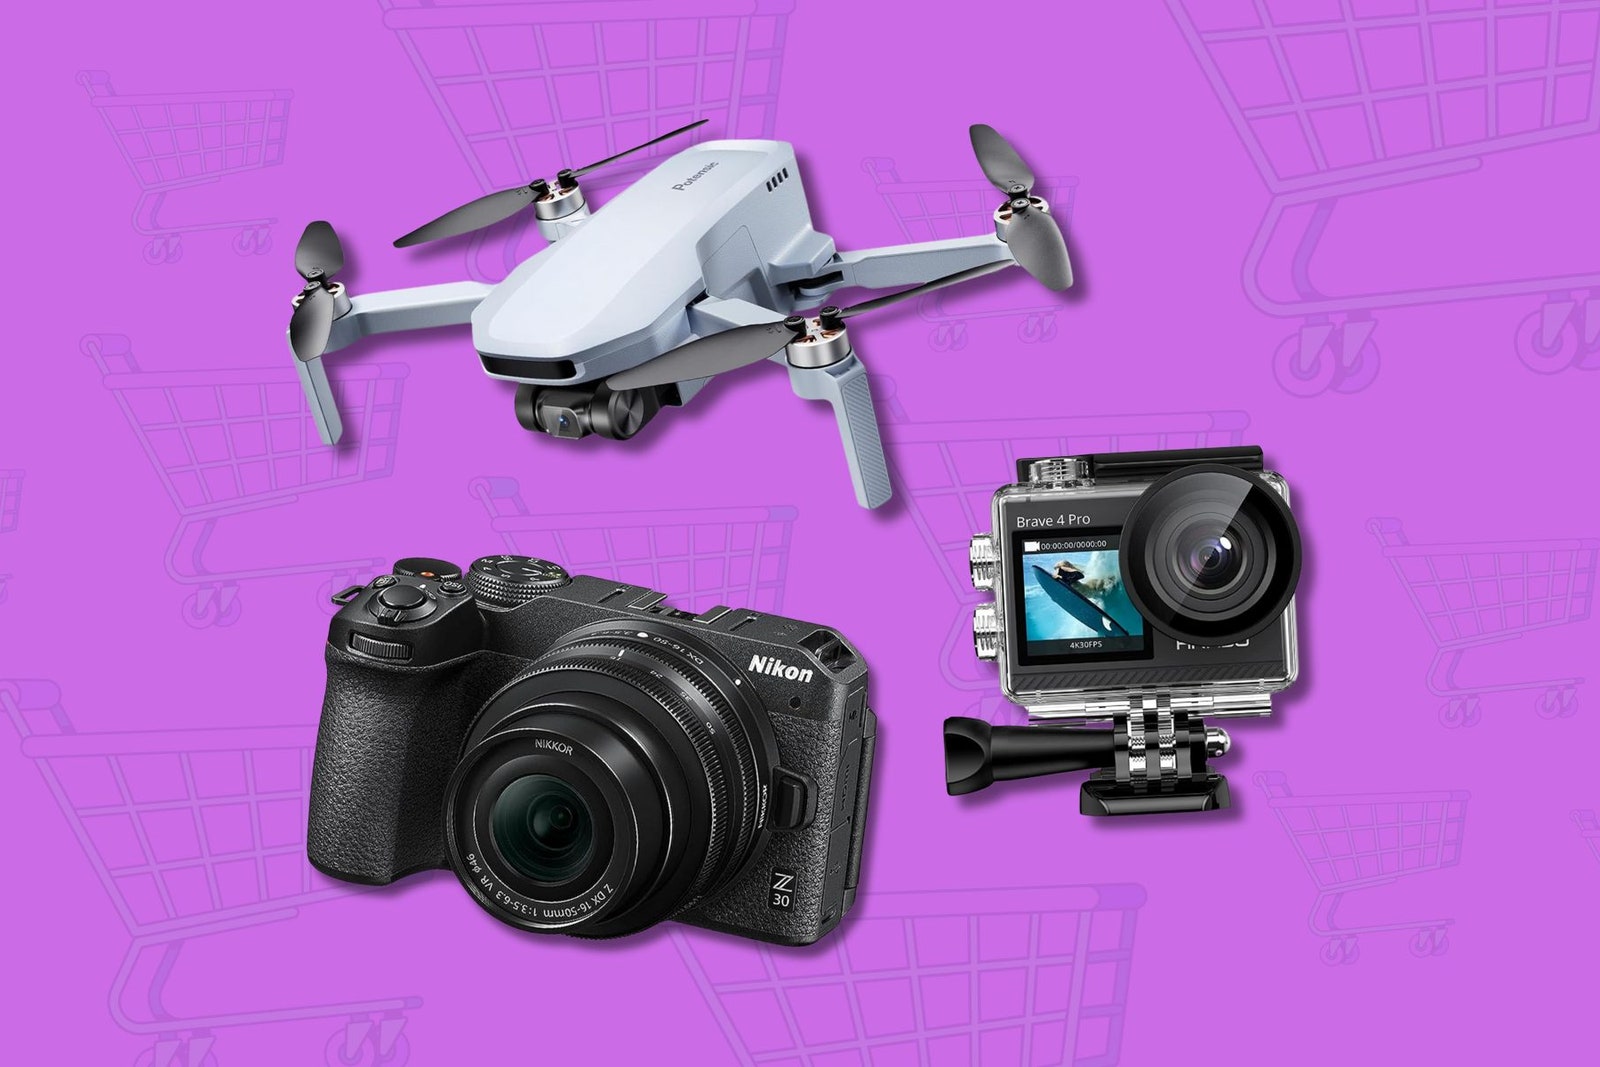 Le fotocamere, le action cam e gli accessori in offerta durante l'Amazon Prime Day